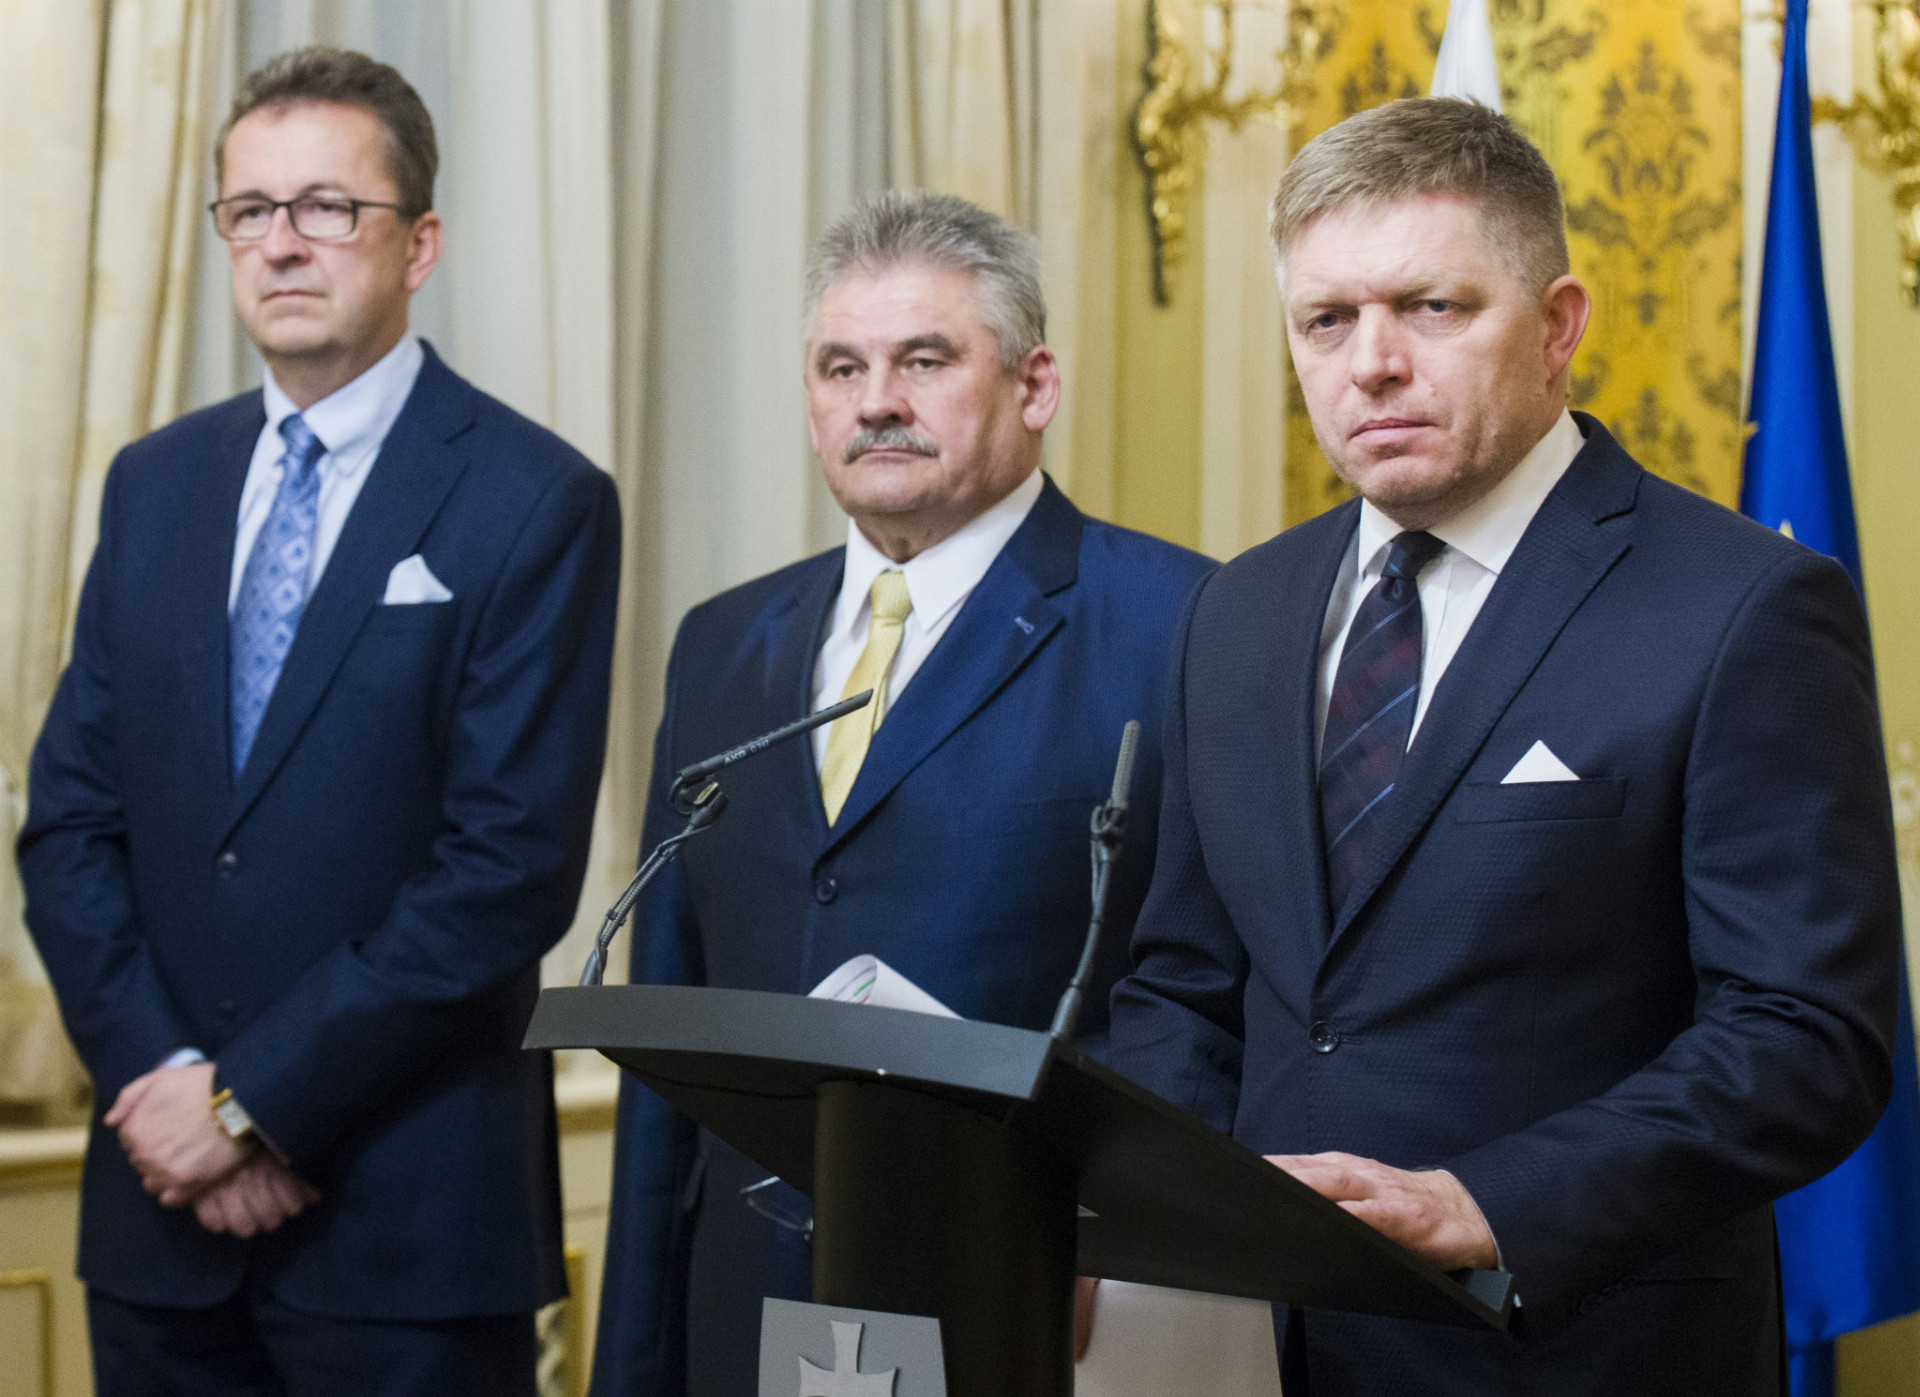 Zo sobotňajšieho rokovania konkrétne rozhodnutia nevzišli, na snímke zľava poslanec NR SR Martin Glváč, minister práce Ján Richter a premiér Robert Fico.